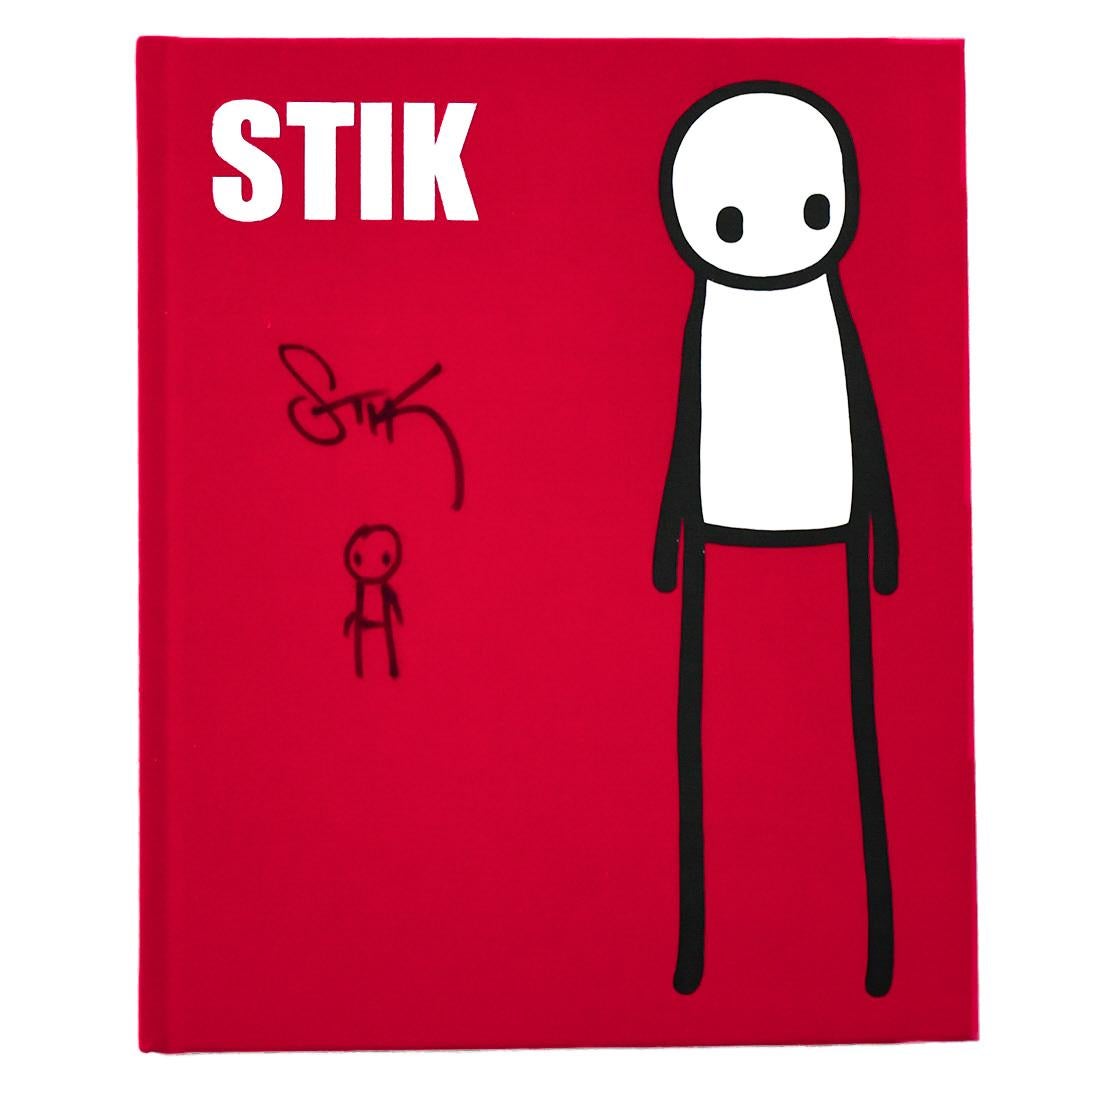 Superbe couverture pour le livre éponyme de Stik.
Signé et dessiné à la main avec une figure très cool sur la couverture par Stik à l'encre noire.
Parfait pour l'encadrement.
Le livre est rouge avec une couverture en tissu.
224 pages imprimées en